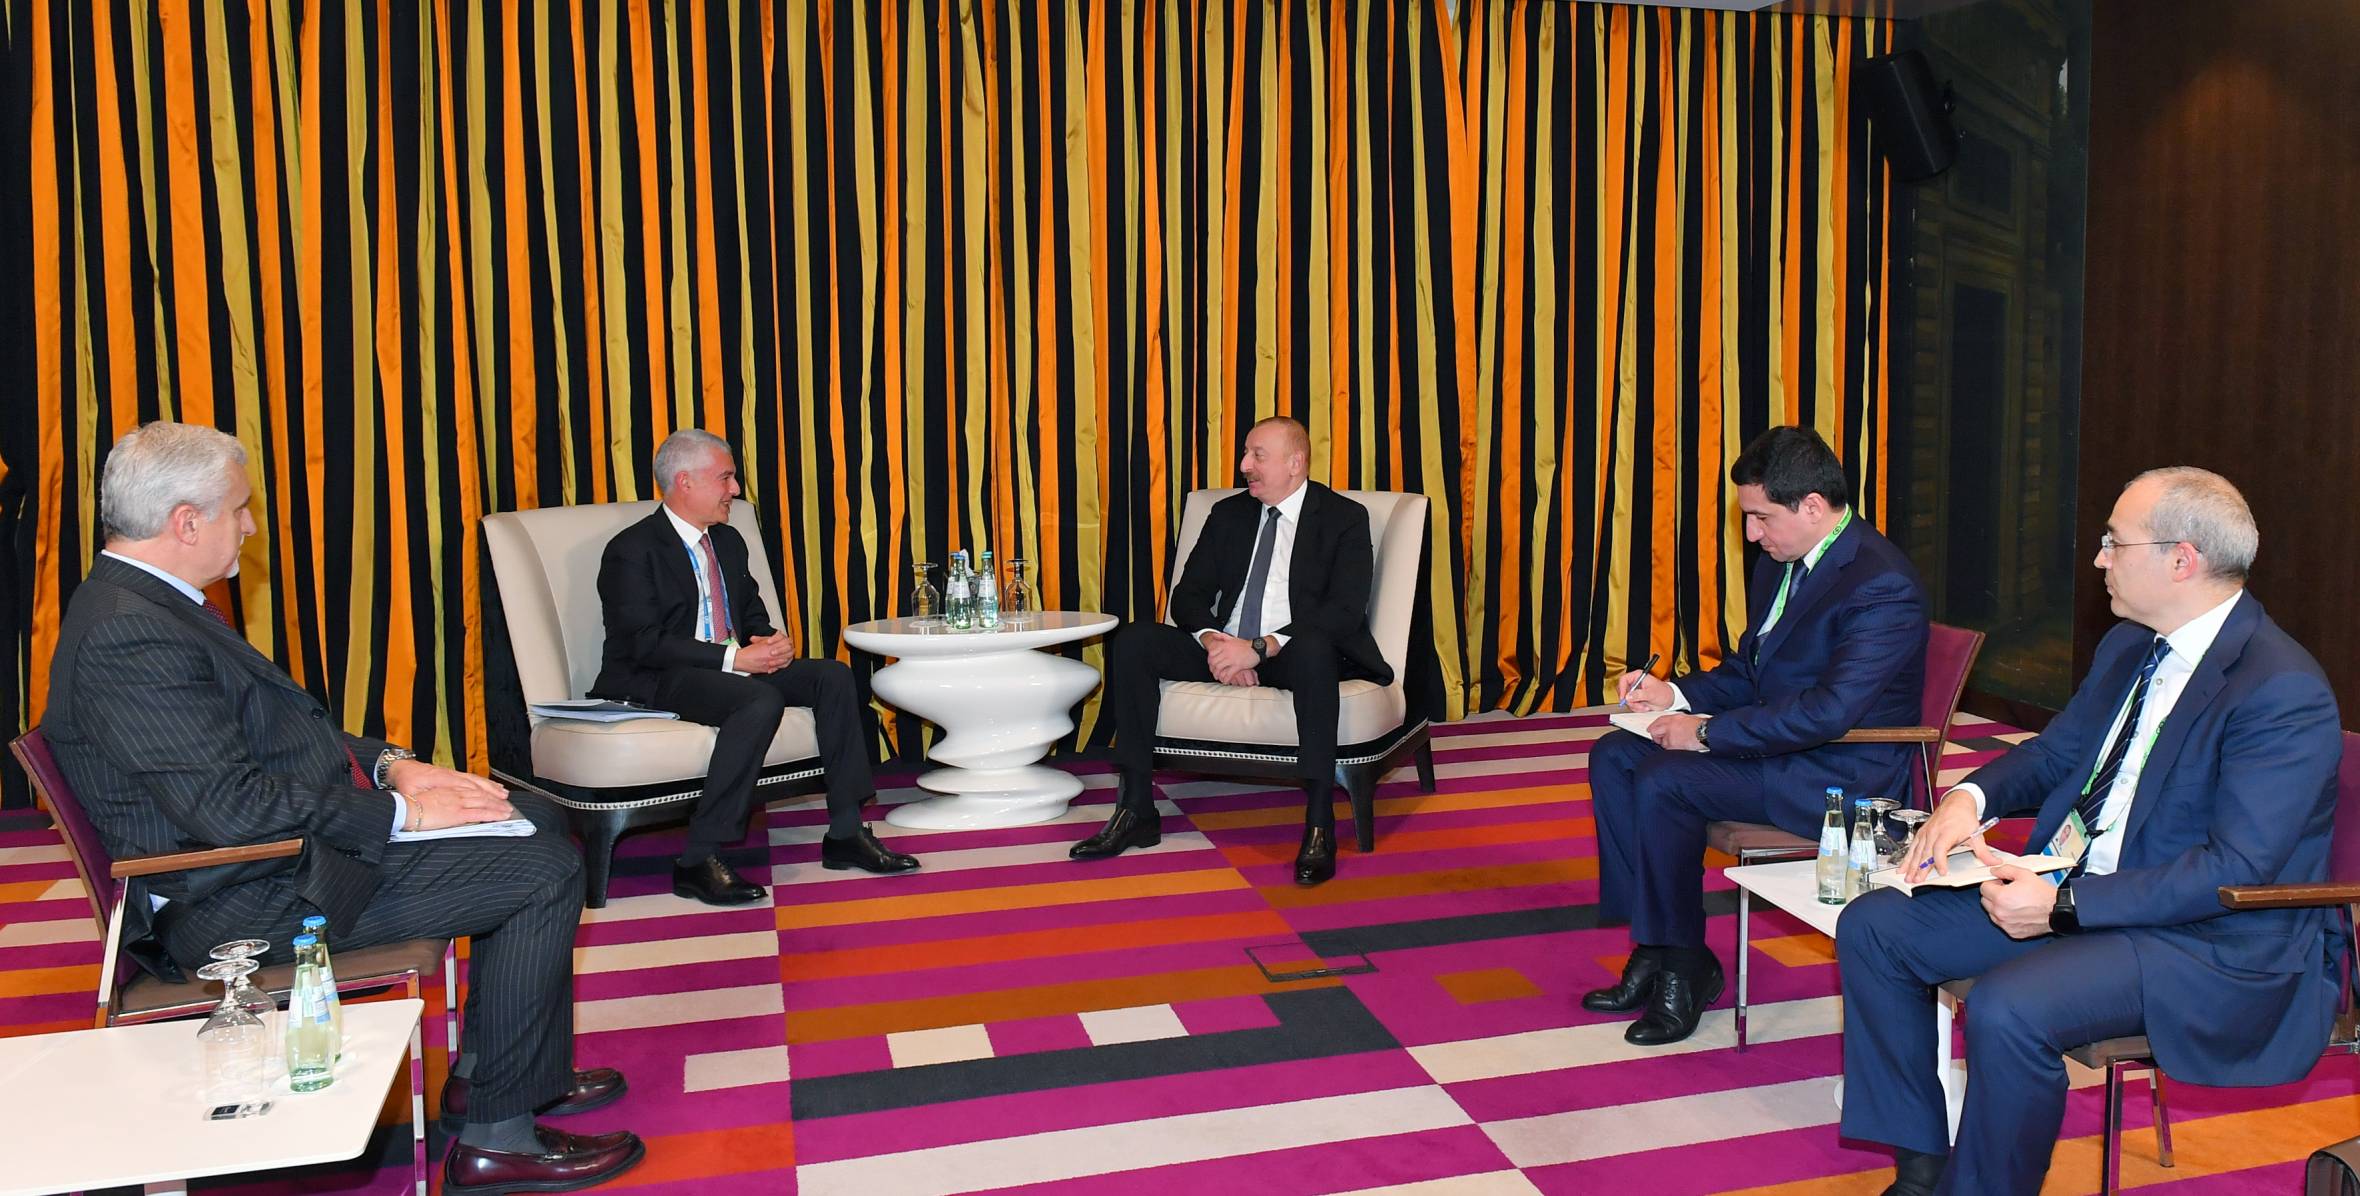 Ильхам Алиев встретился в Мюнхене с генеральным содиректором компании Leonardo